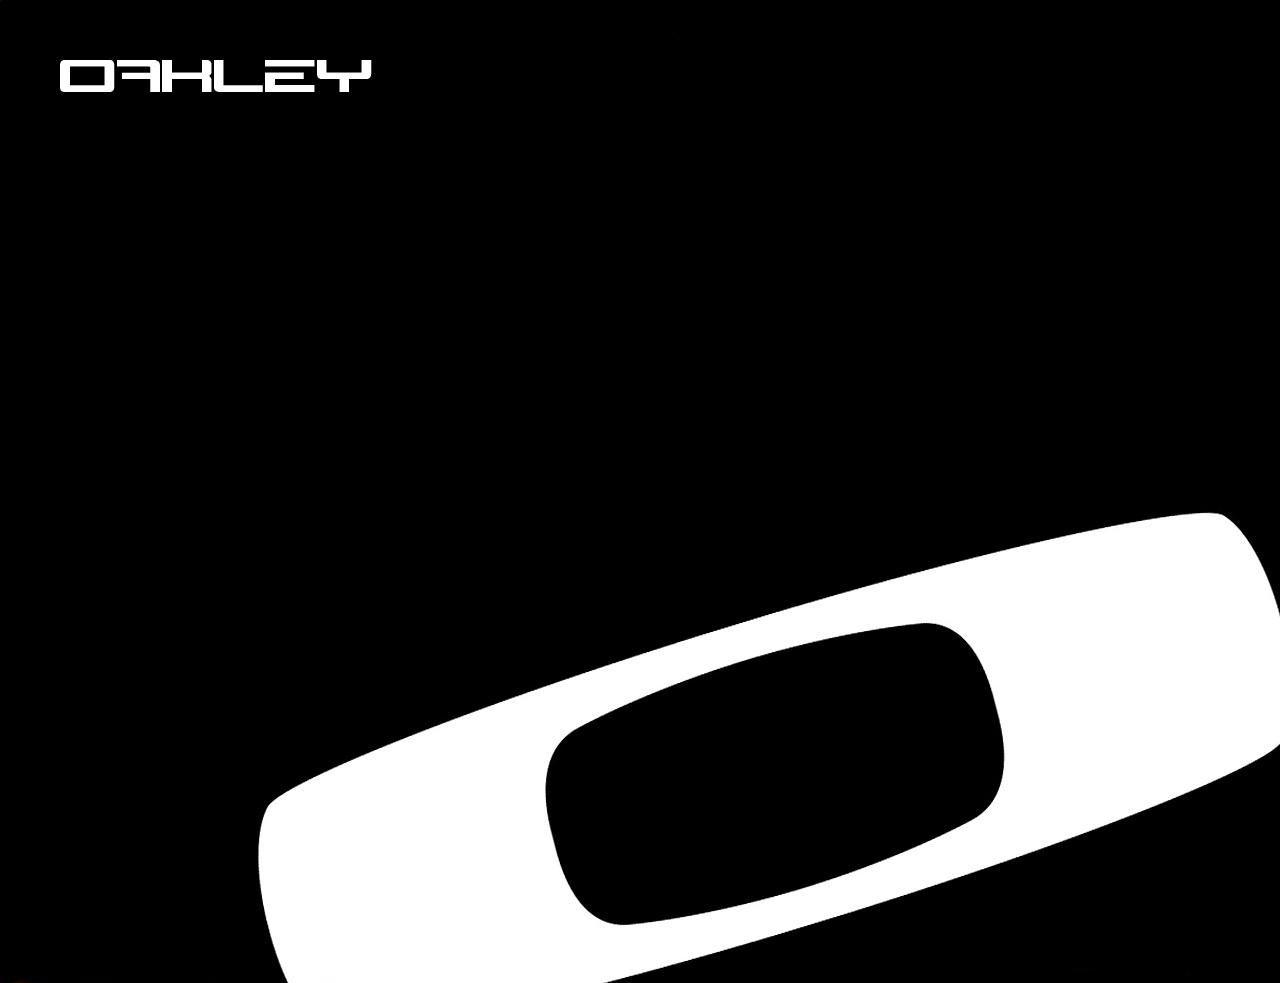 Oakley Logo - Oakley Logo | Luxe Image Board | Pinterest | Oakley, Oakley logo and ...